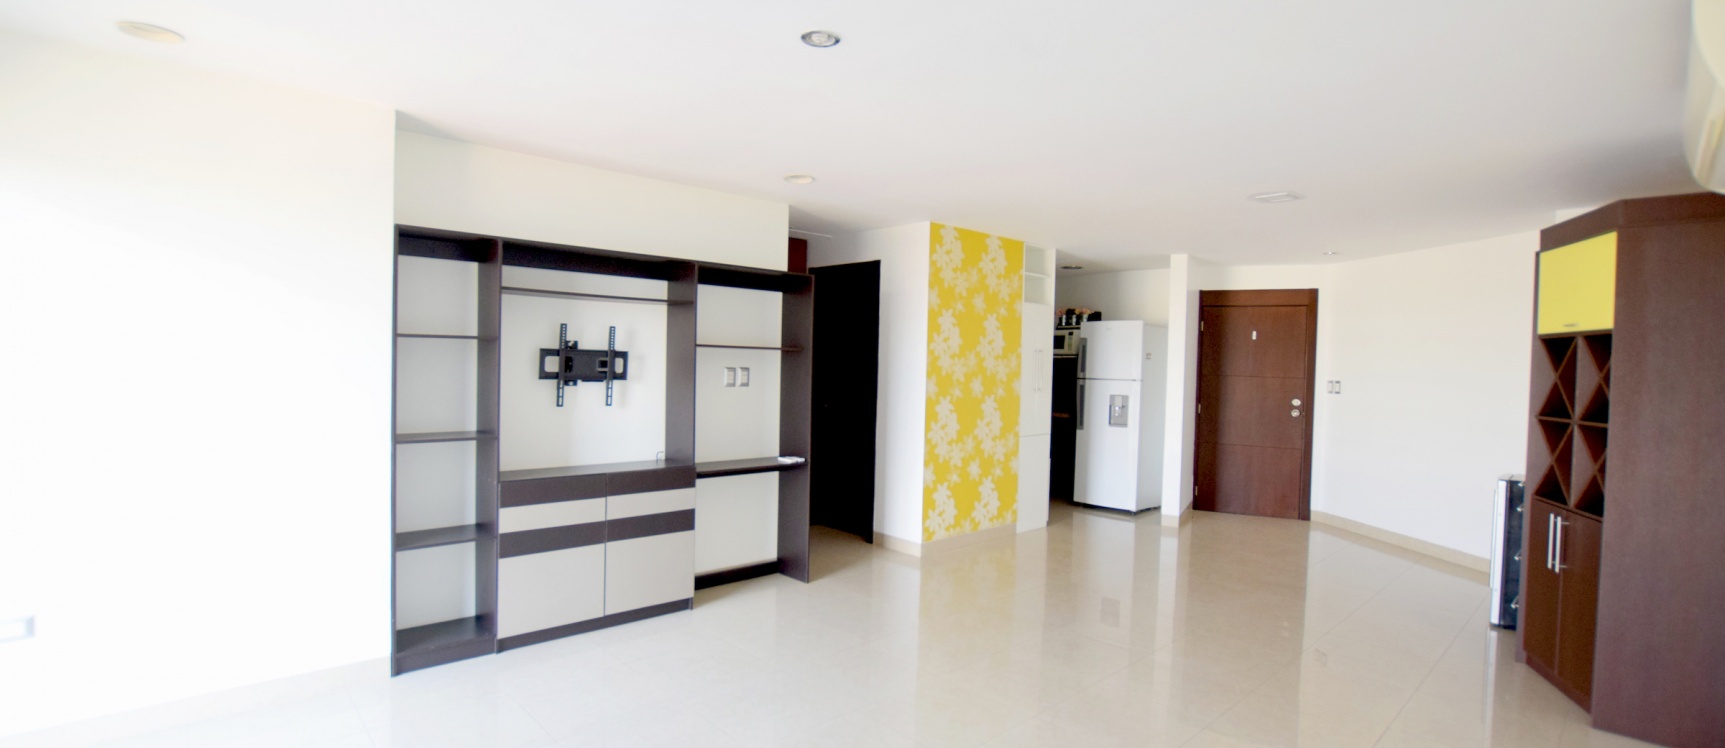 GeoBienes - Suite en alquiler ubicada en Ciudad Colón, Norte de Guayaquil - Plusvalia Guayaquil Casas de venta y alquiler Inmobiliaria Ecuador